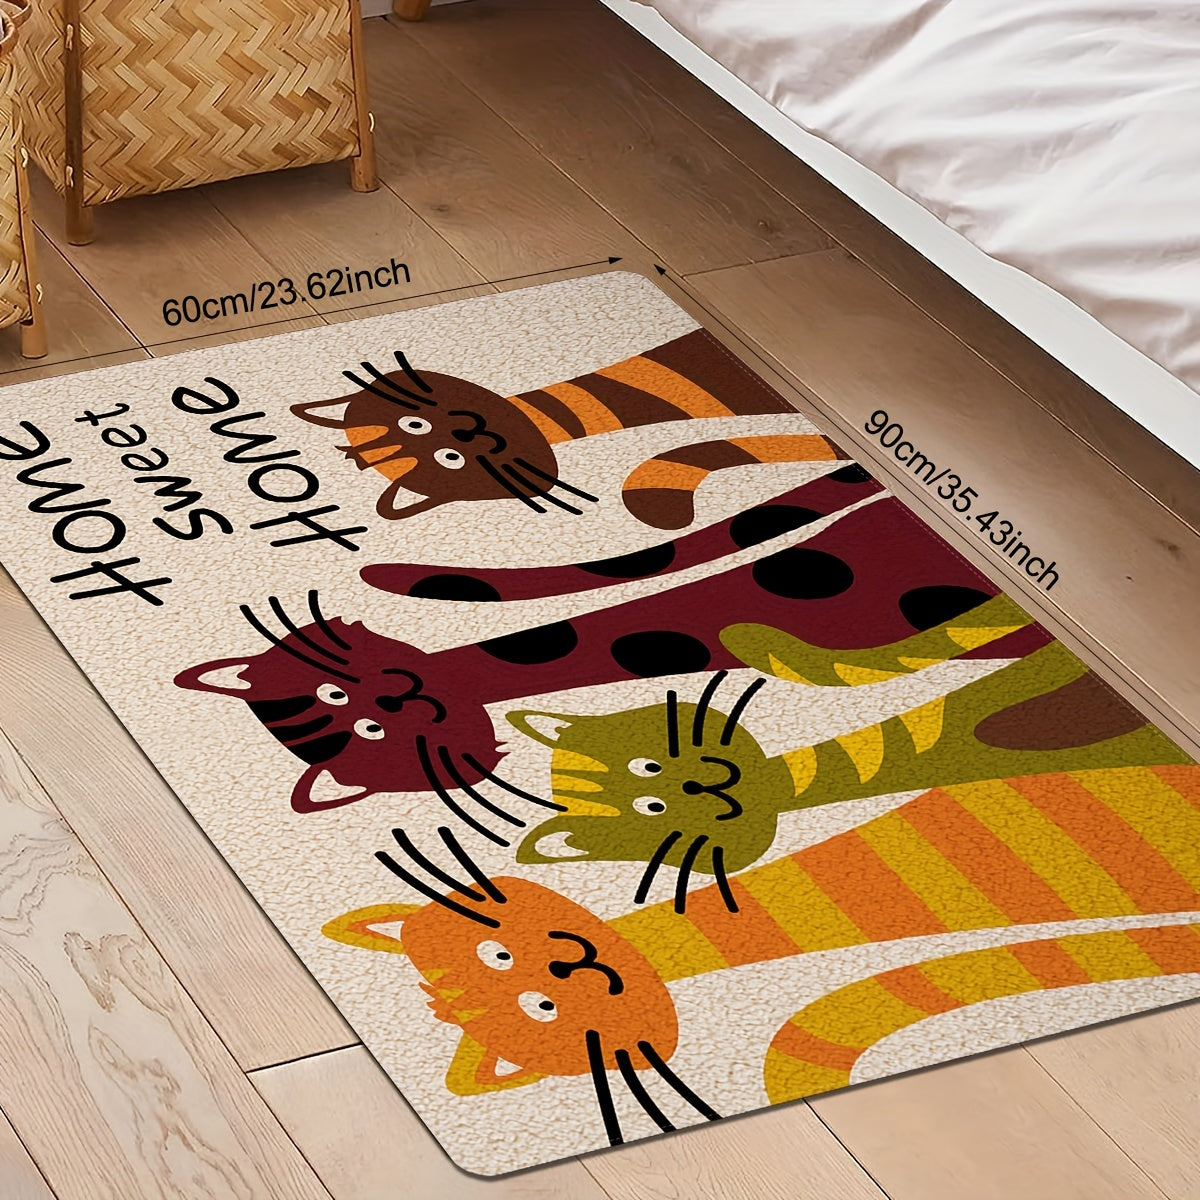 Charming Cat Design Non-Slip Floor Mat for bedside Home decor